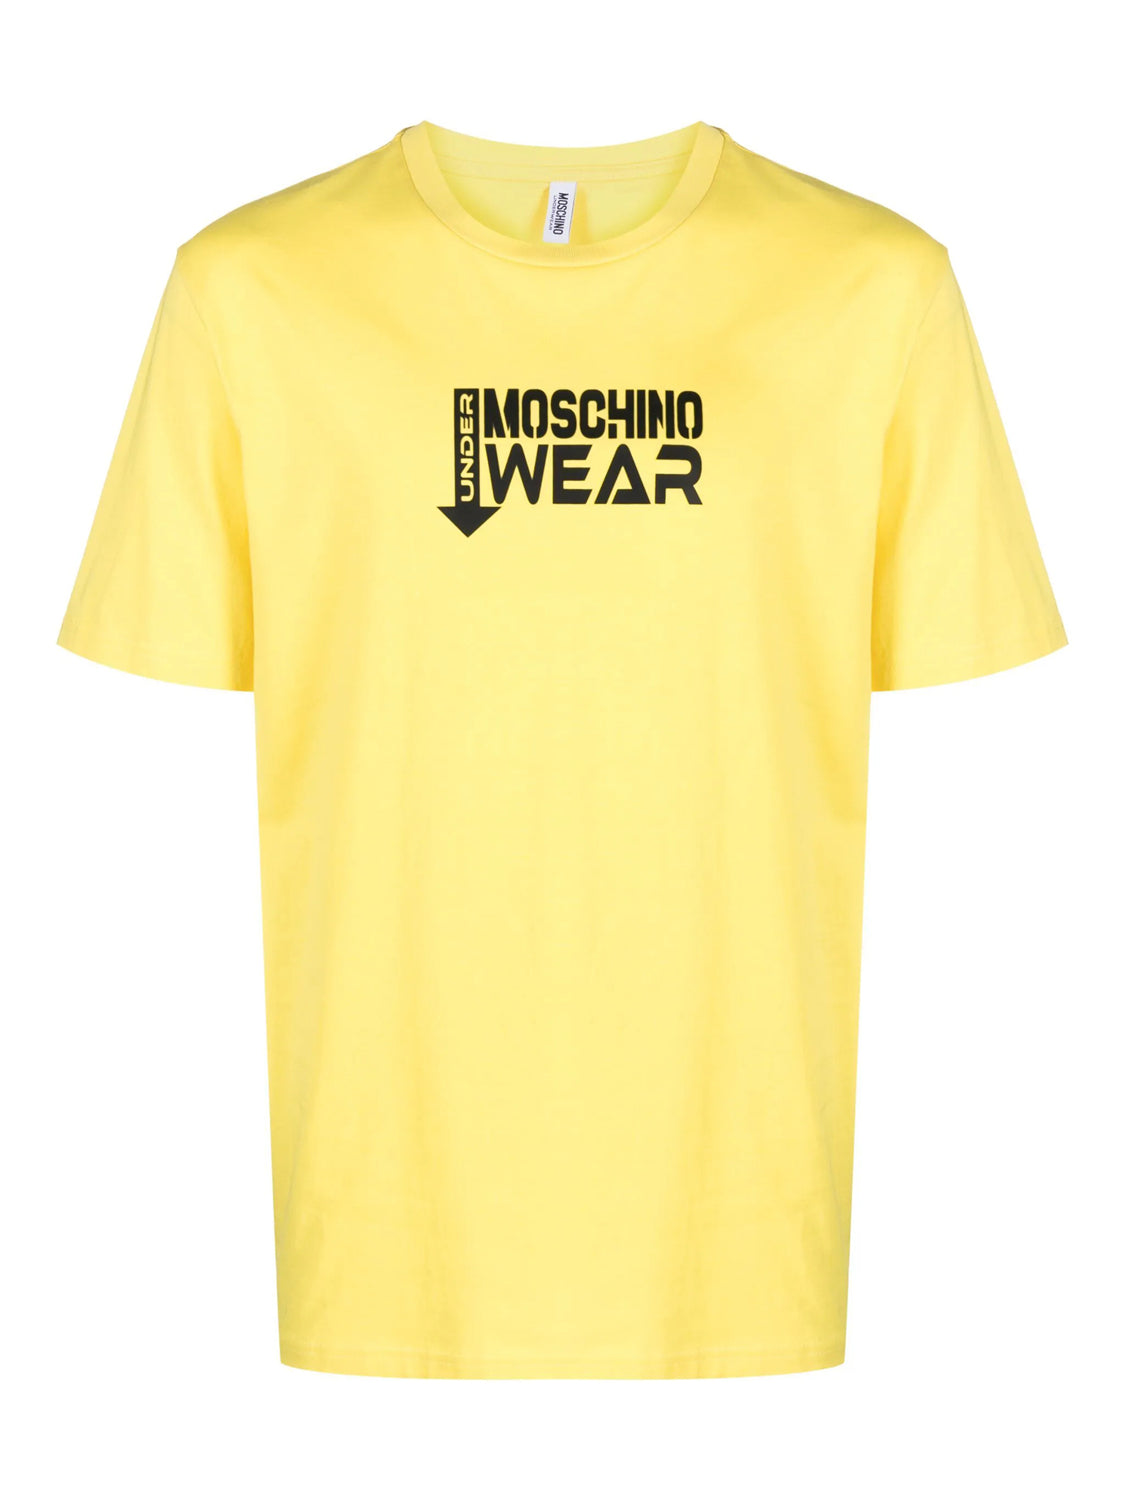 Moschino T Shirt A0712 4424 Yellow Amarelo_shot1